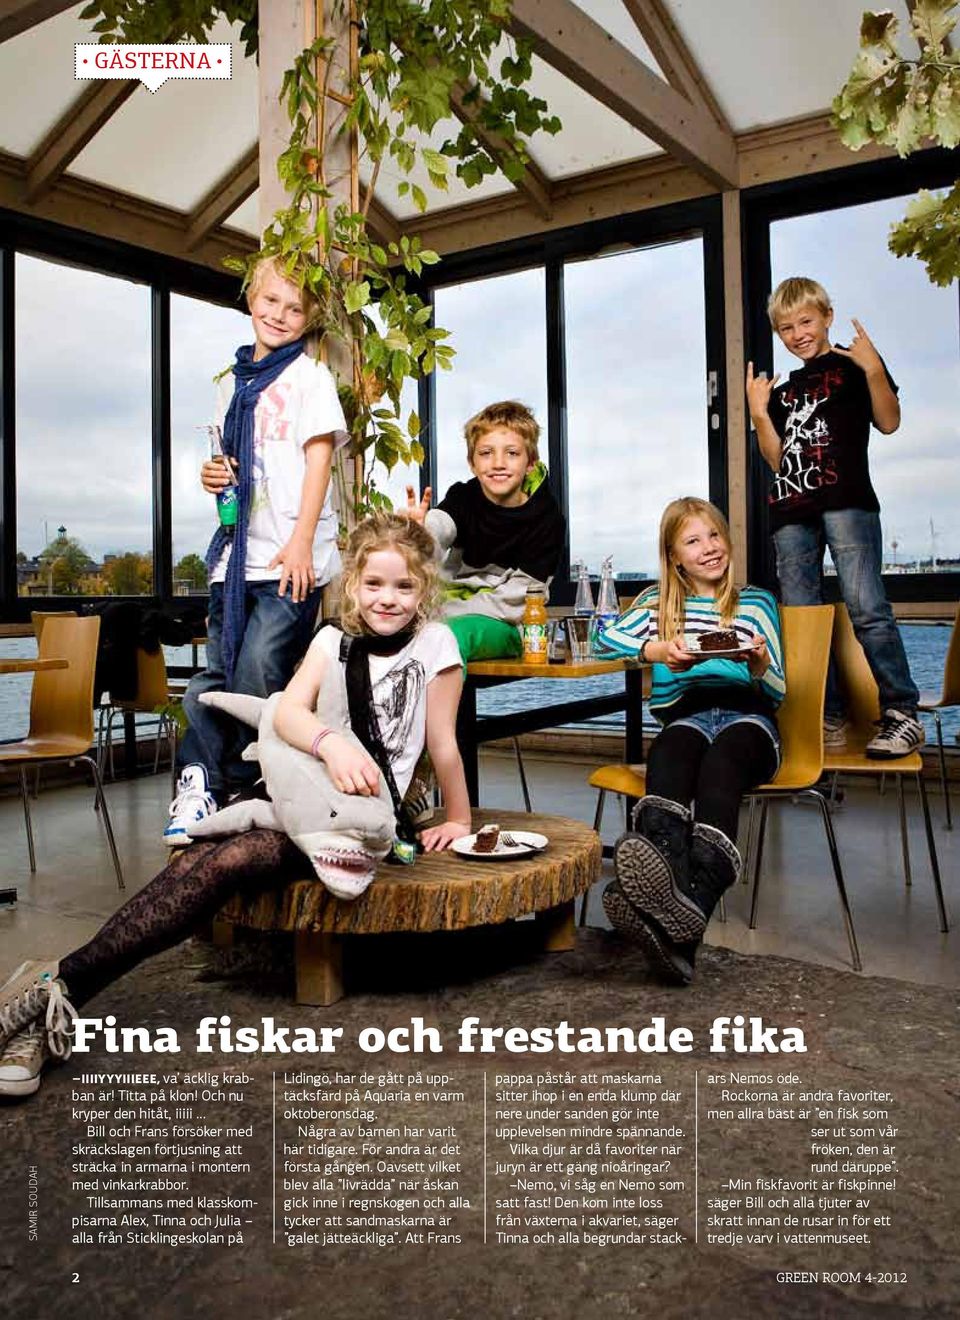 Tillsammans med klasskompisarna Alex, Tinna och Julia alla från Sticklingeskolan på Lidingö, har de gått på upptäcksfärd på Aquaria en varm oktoberonsdag. Några av barnen har varit här tidigare.